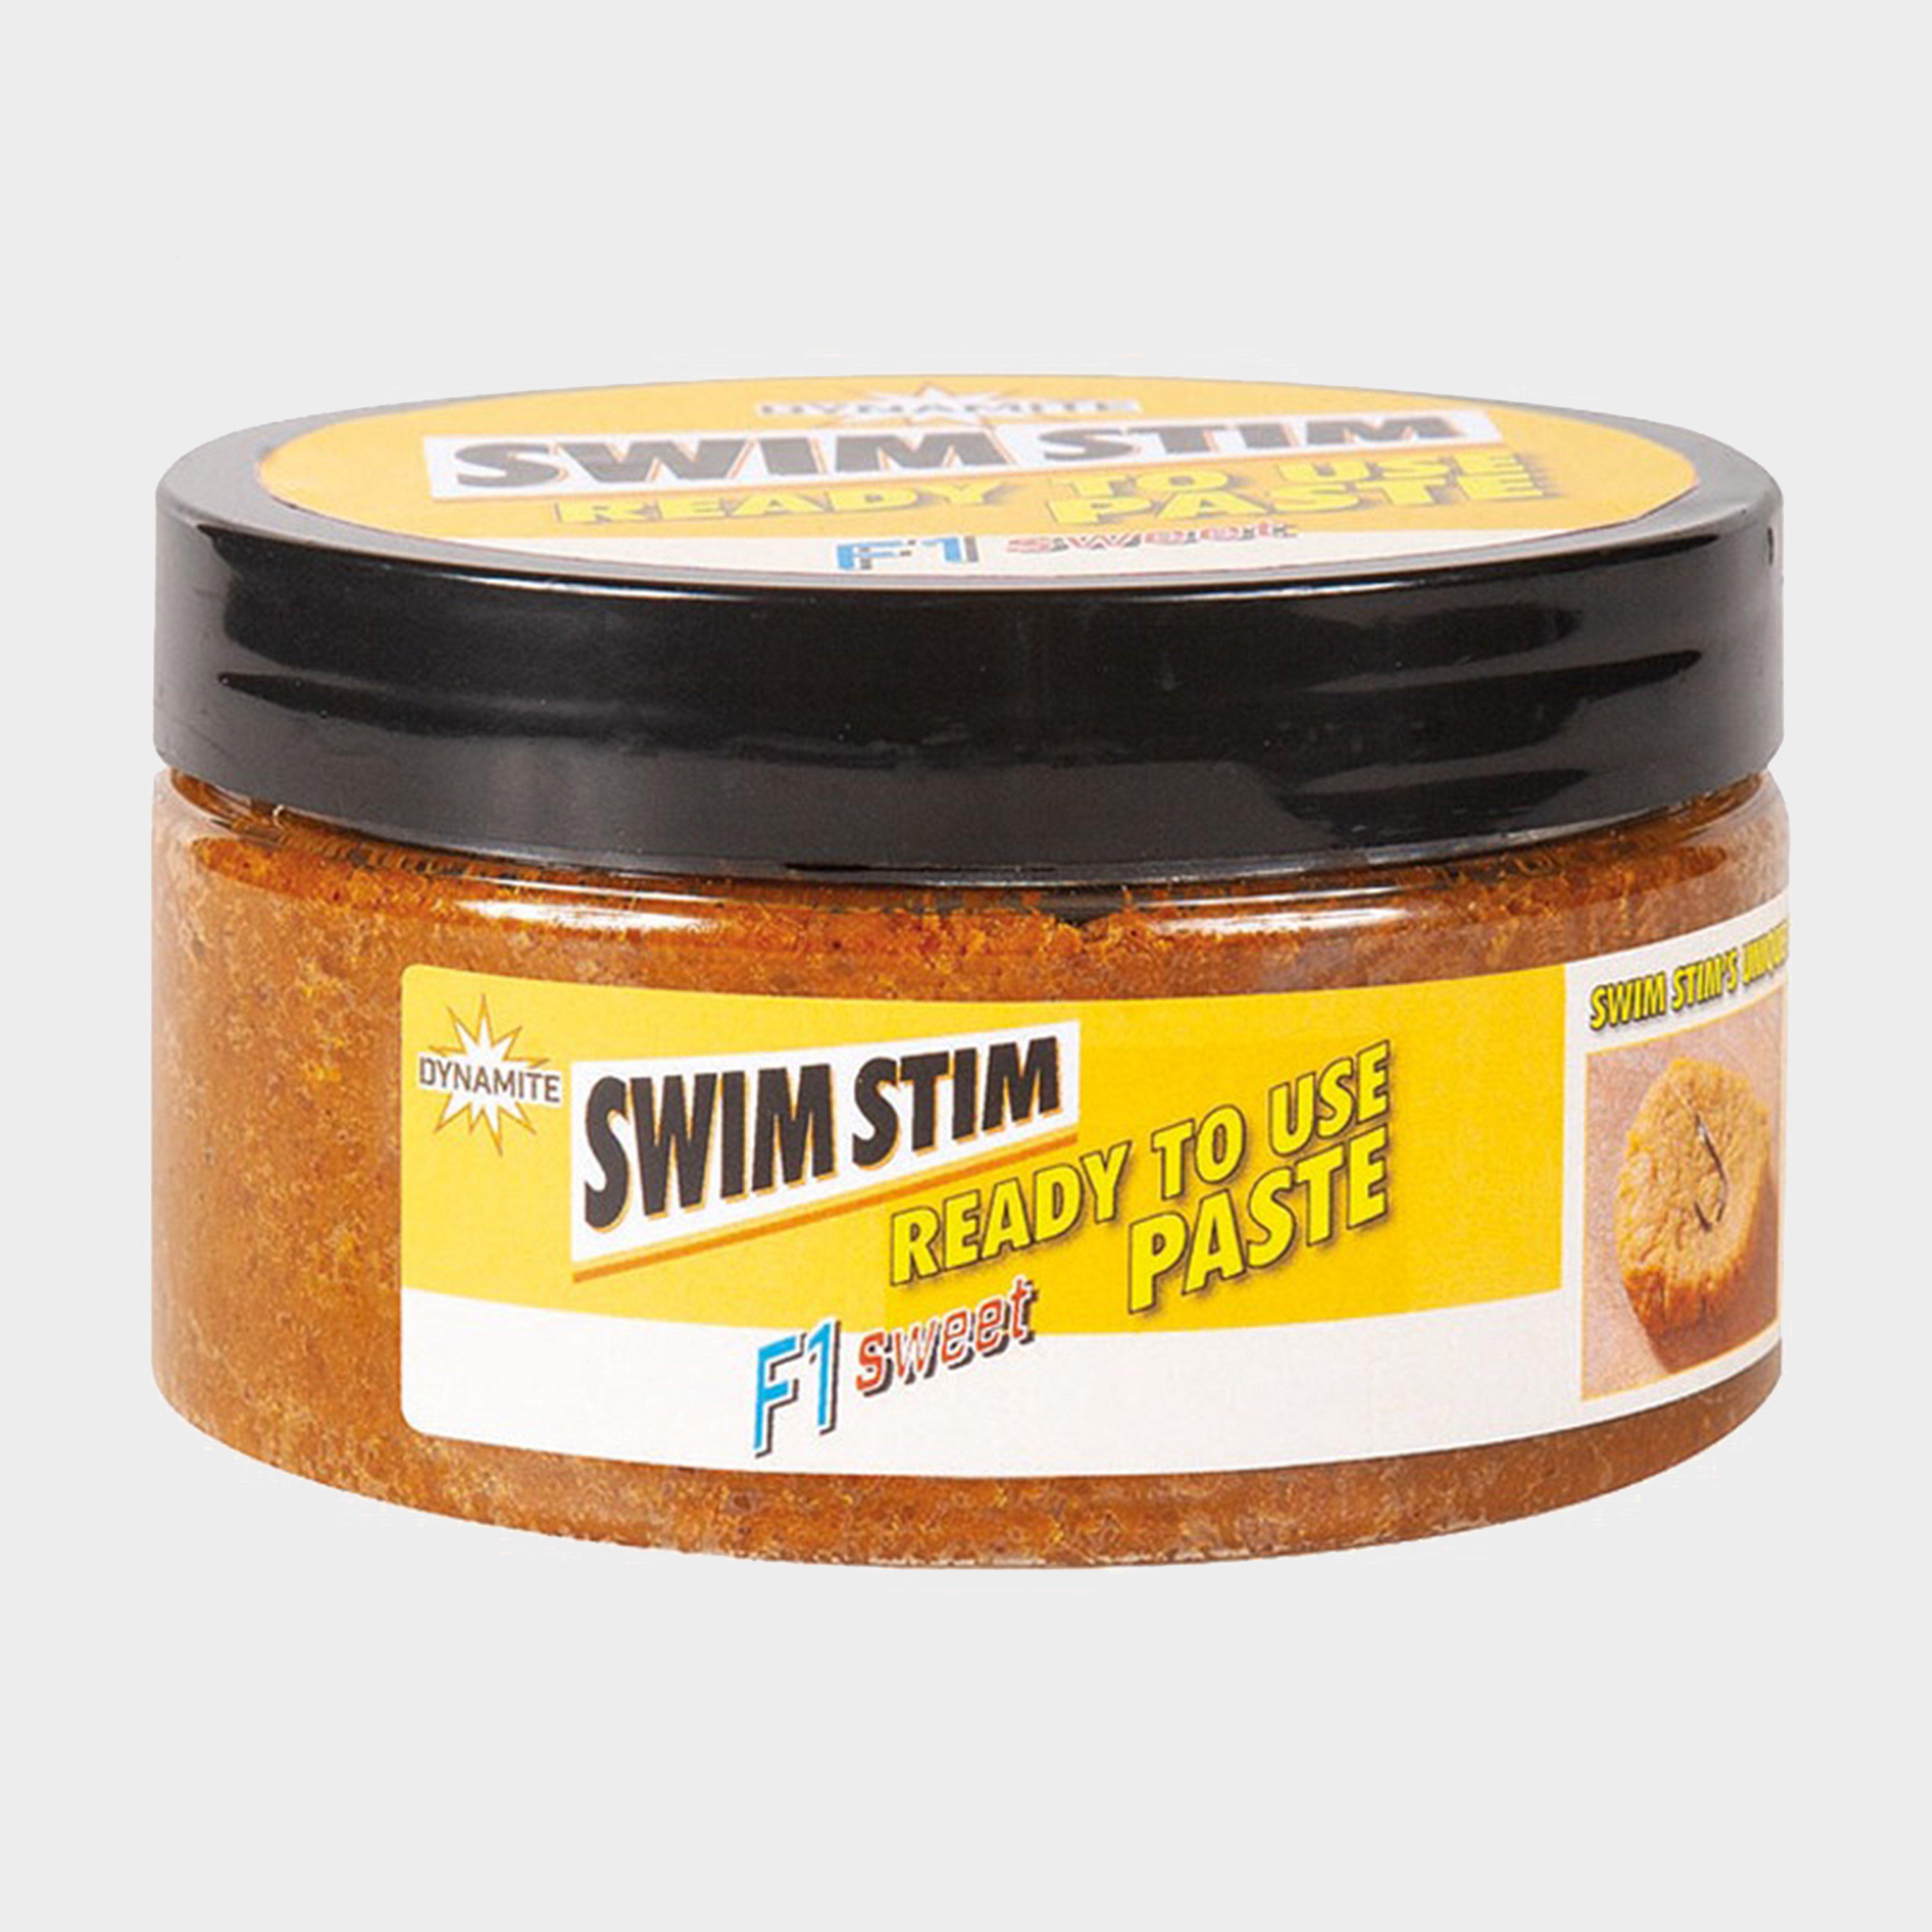 Dynamite F1 Swim Stim Ready To Use Paste (sweet) - Paste/paste  Paste/paste